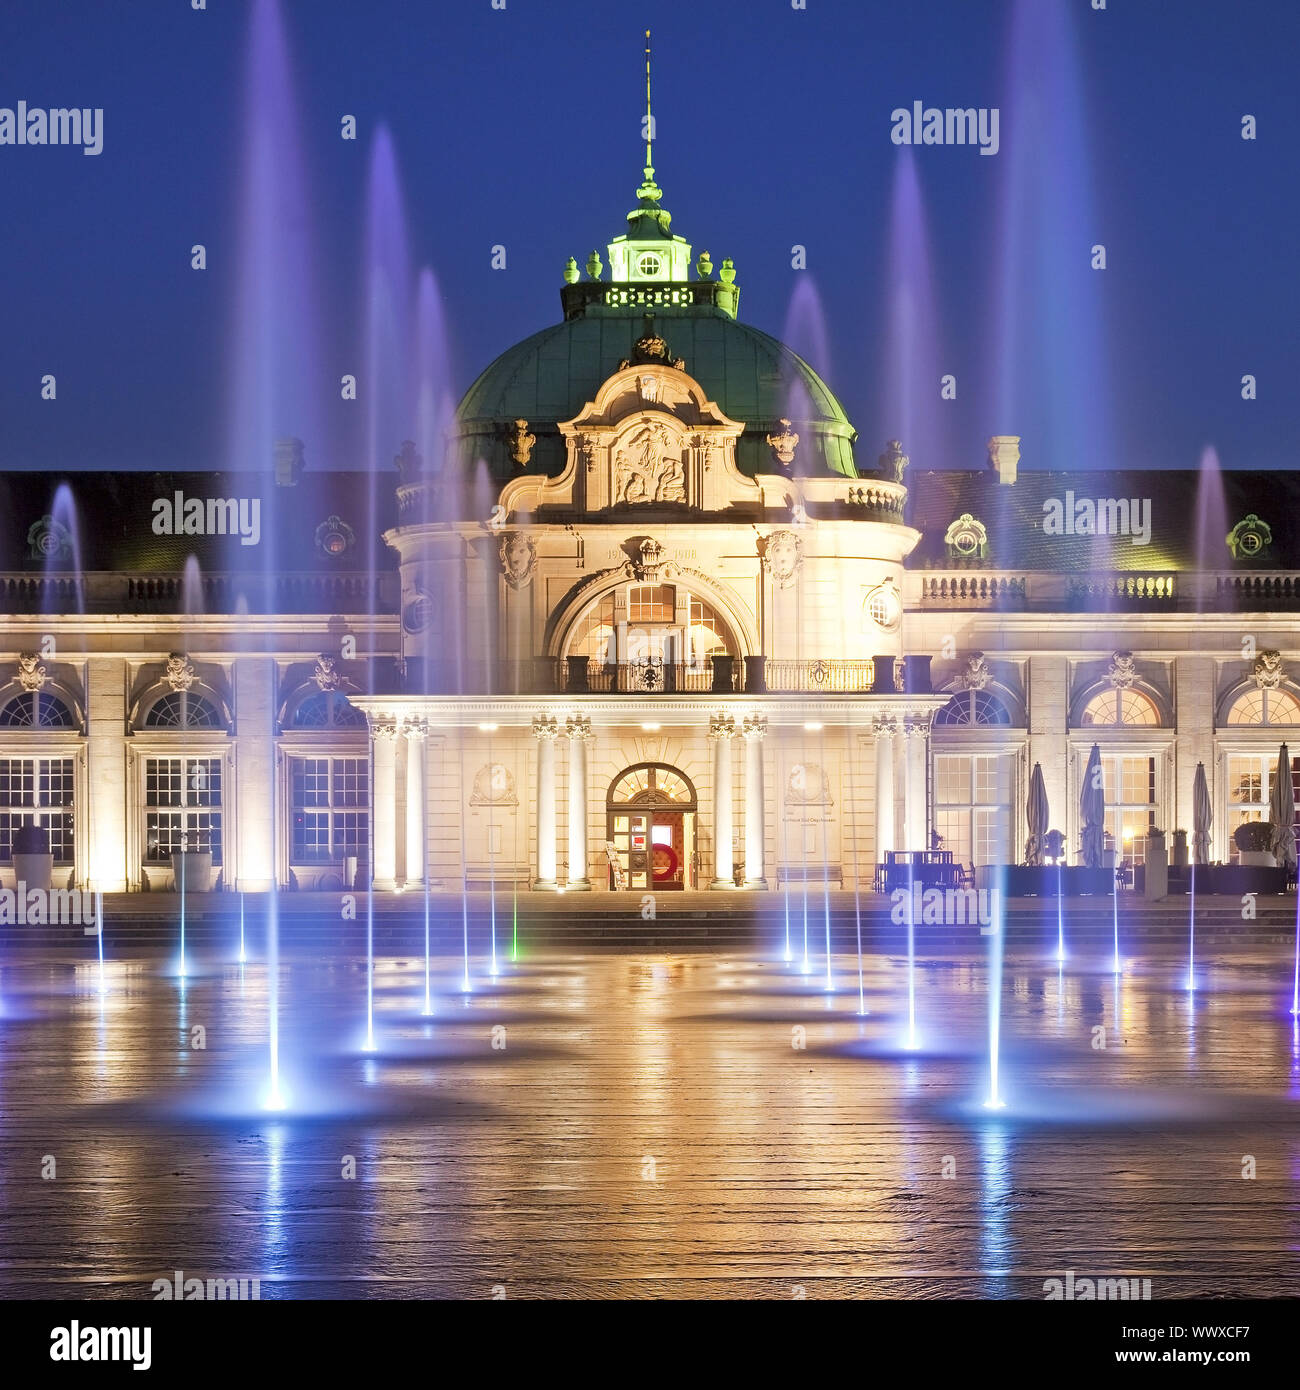 Kaiserpalais éclairé avec de l'eau des colonnes dans le parc thermal à l'heure bleue, Bad Oeynhausen, Allemagne Banque D'Images